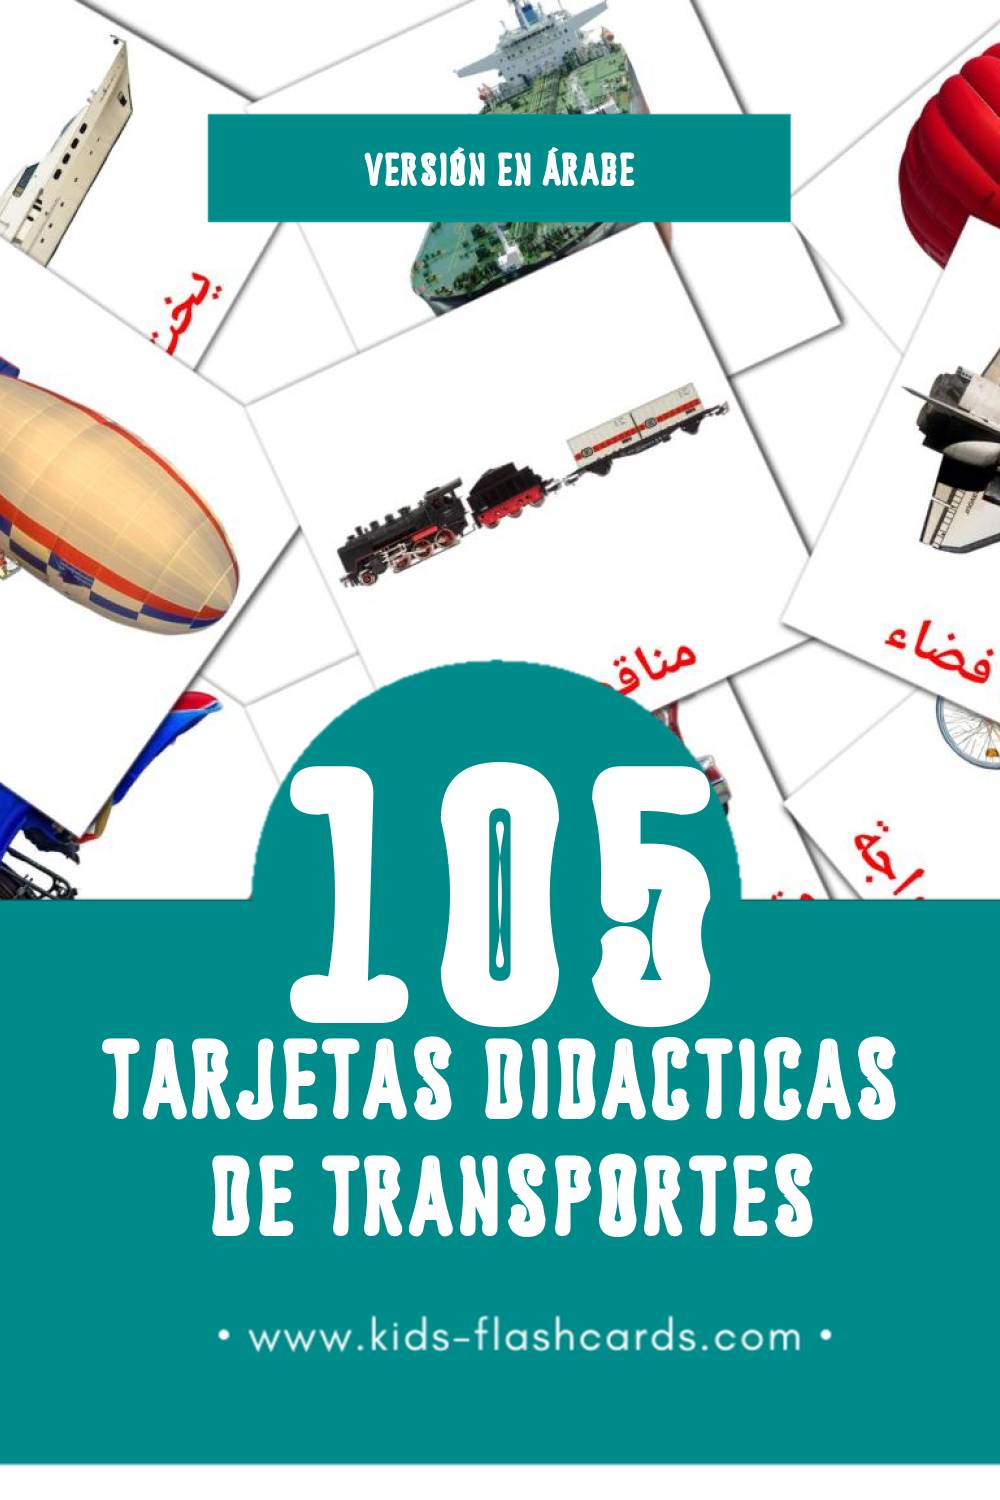 Tarjetas visuales de وسائل النقل para niños pequeños (105 tarjetas en Árabe)